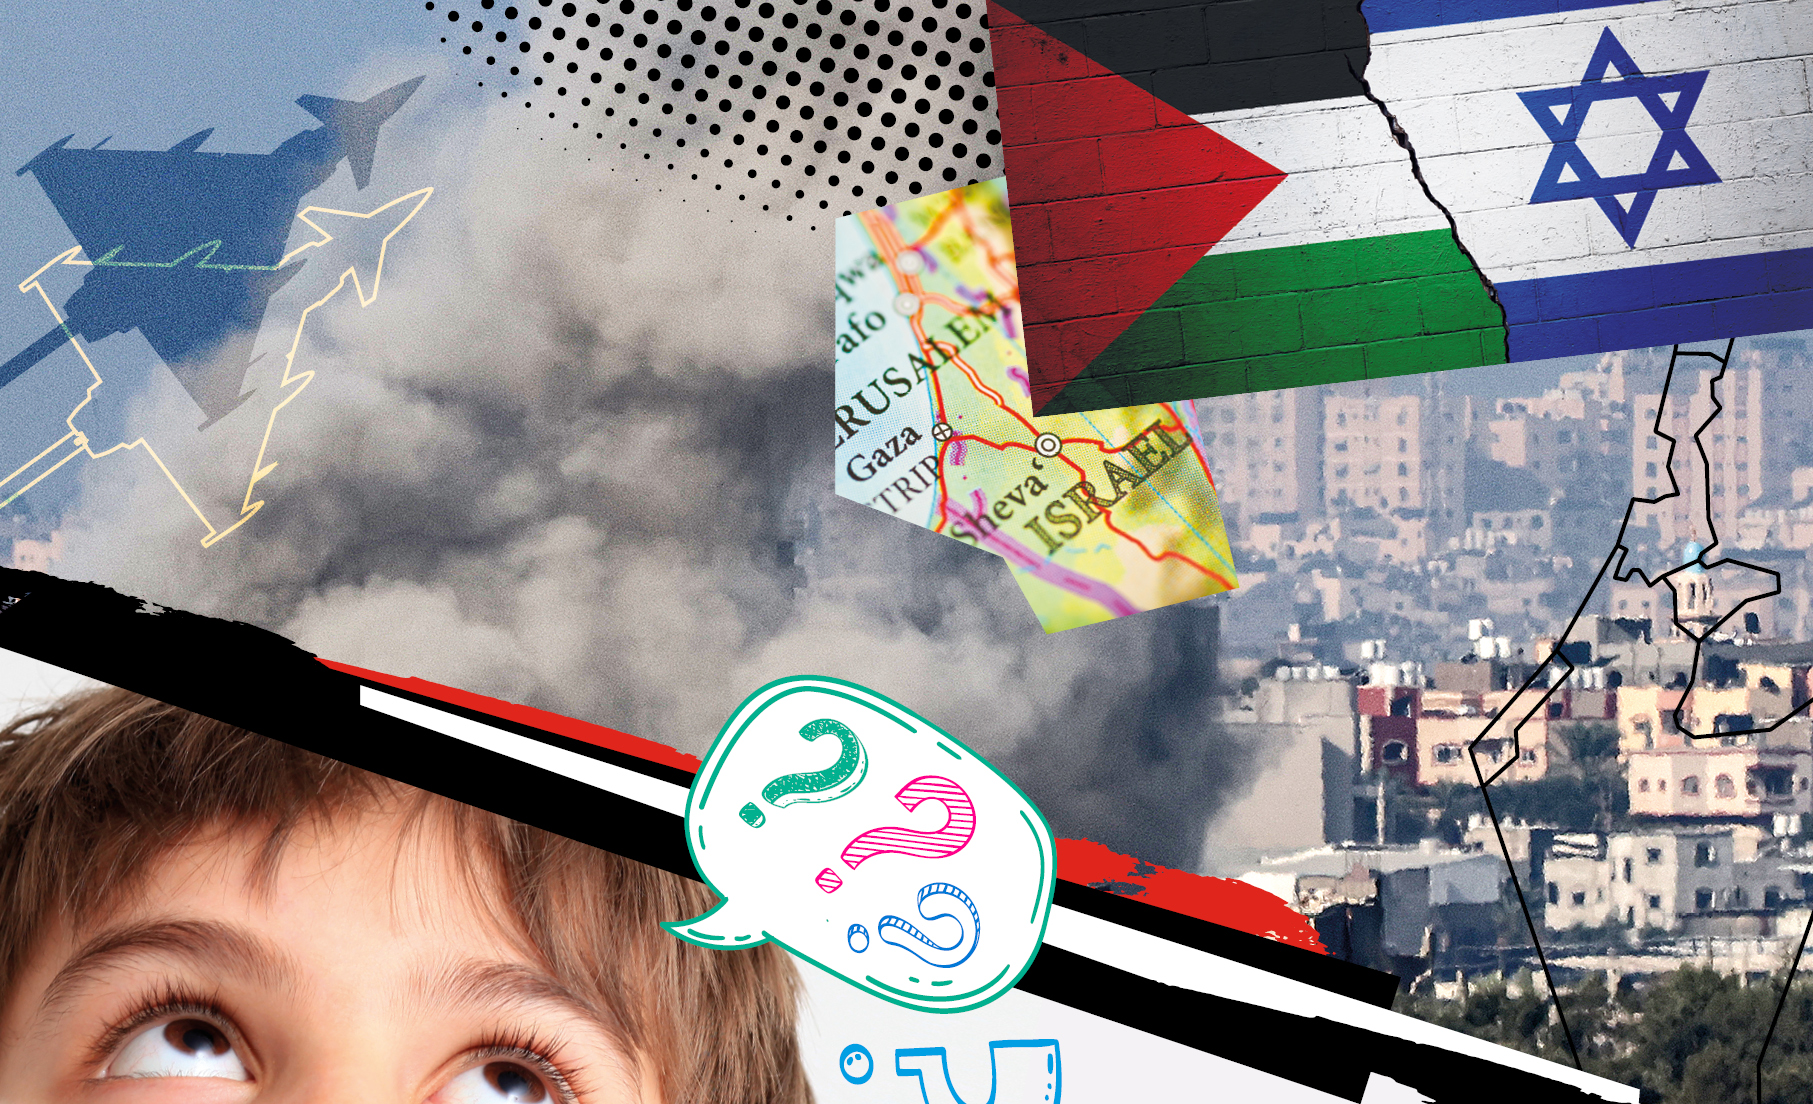 Guerra para quê? Crianças tiram dúvidas sobre o conflito no Oriente Médio